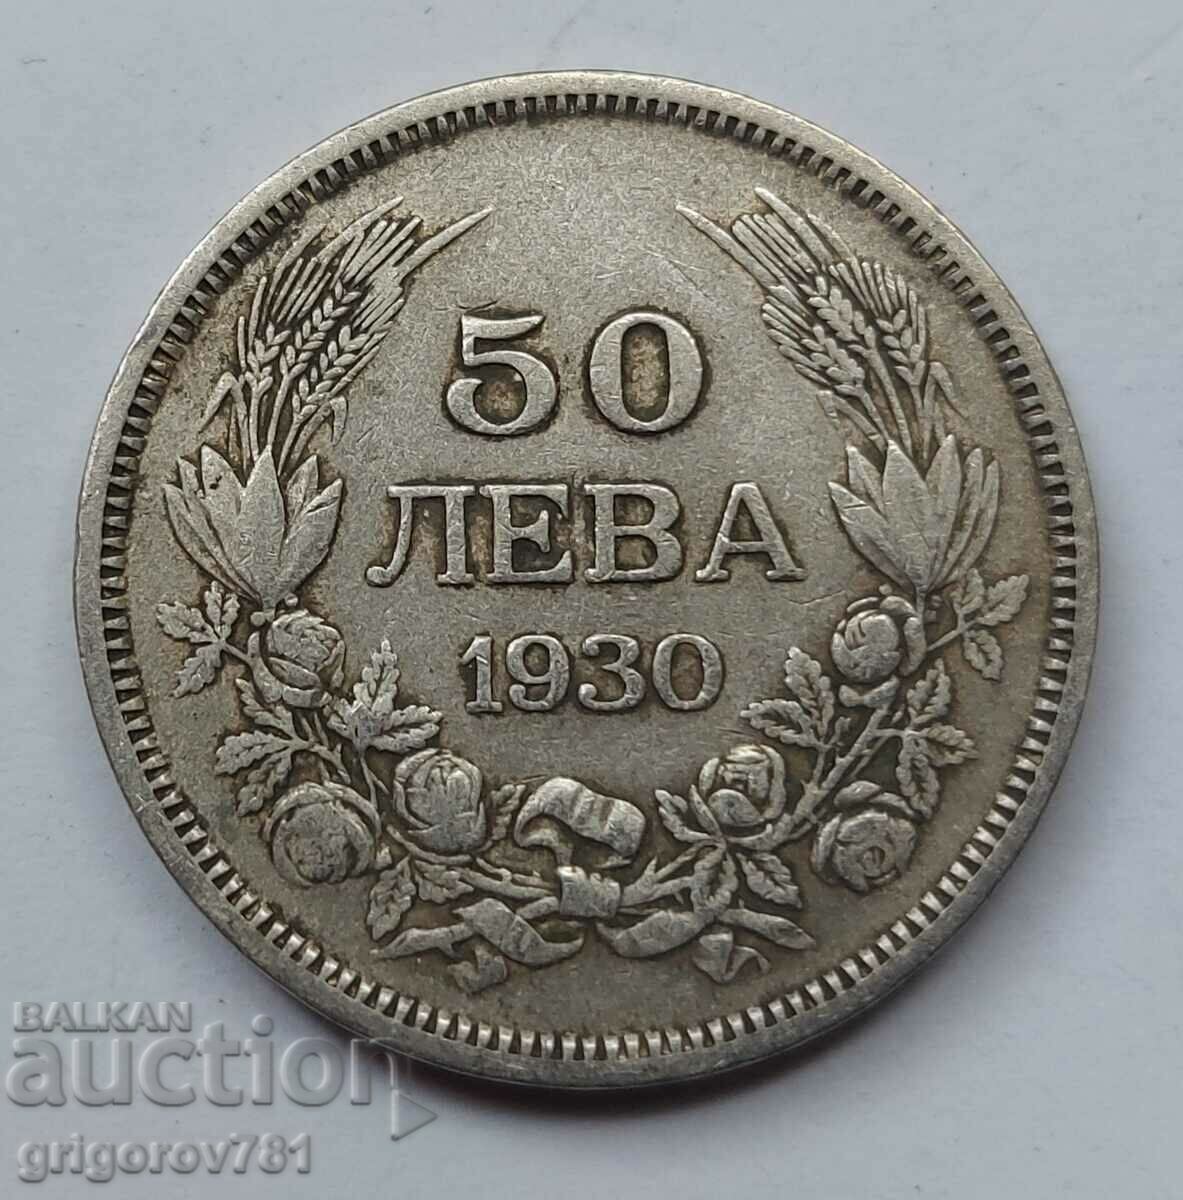 50 leva silver Bulgaria 1930 - silver coin #69